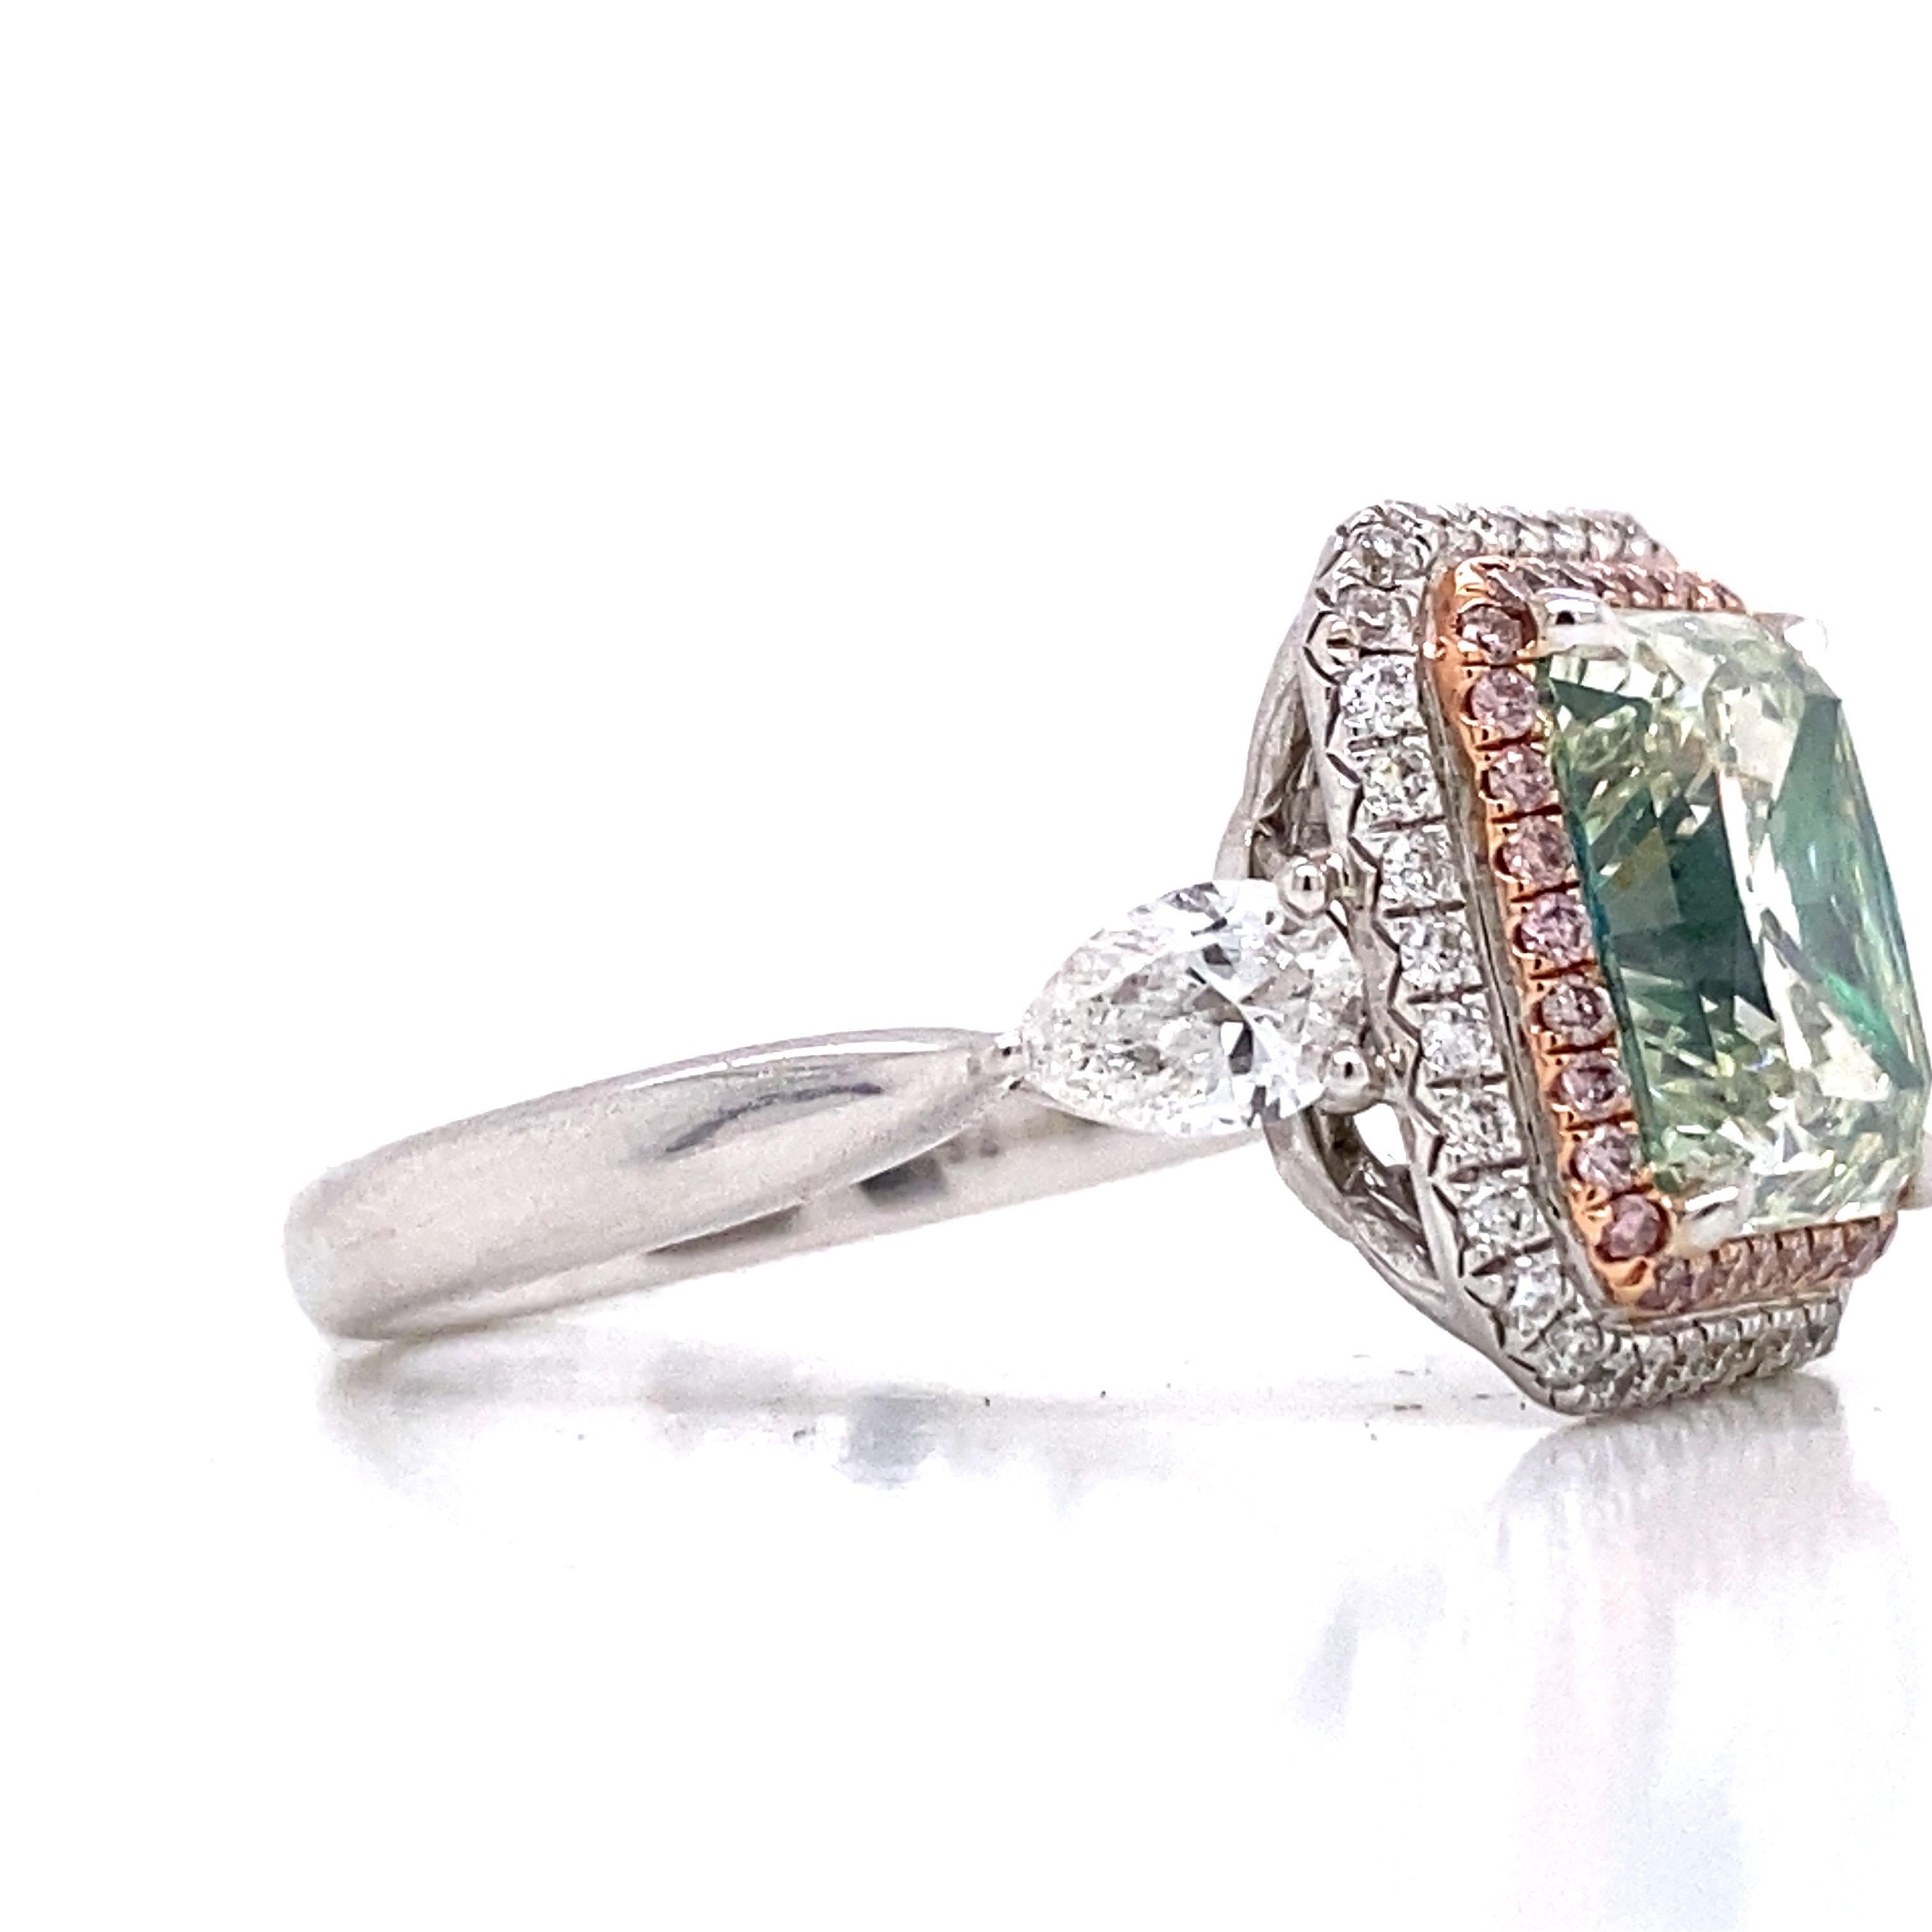 Aus dem Tresor von Emilio Jewelry in der berühmten Fifth Avenue in New York,
Präsentiert wird ein ganz besonderer und seltener Gia-zertifizierter natürlicher grünlicher Diamant mit einem Gewicht von über 4,00 Karat. Bitte erkundigen Sie sich nach